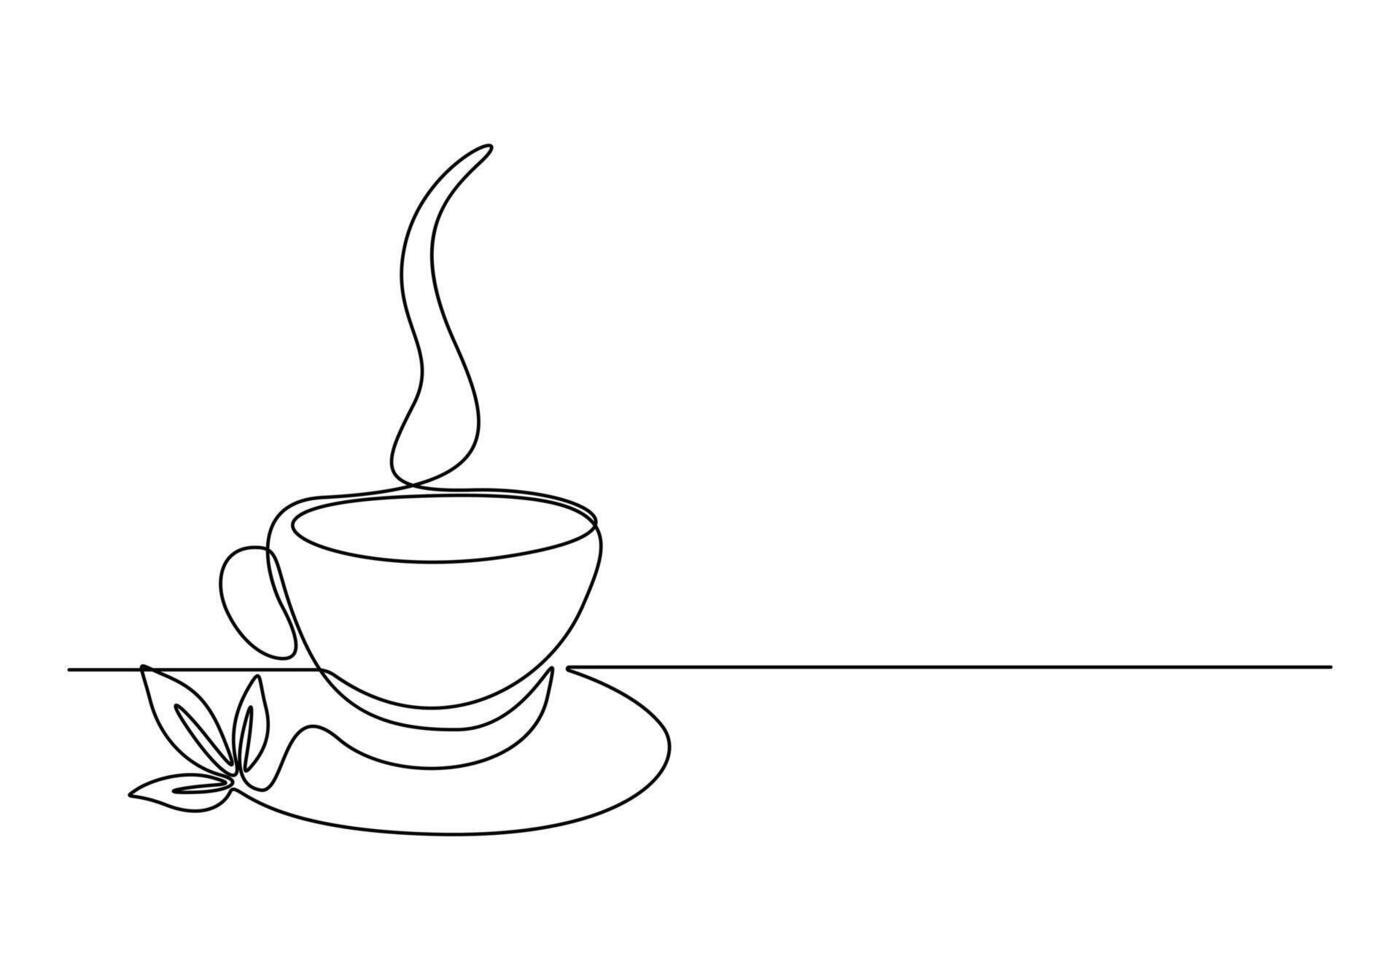 café ou chá copo 1 contínuo linha desenhando quente beber com vapor vetor ilustração